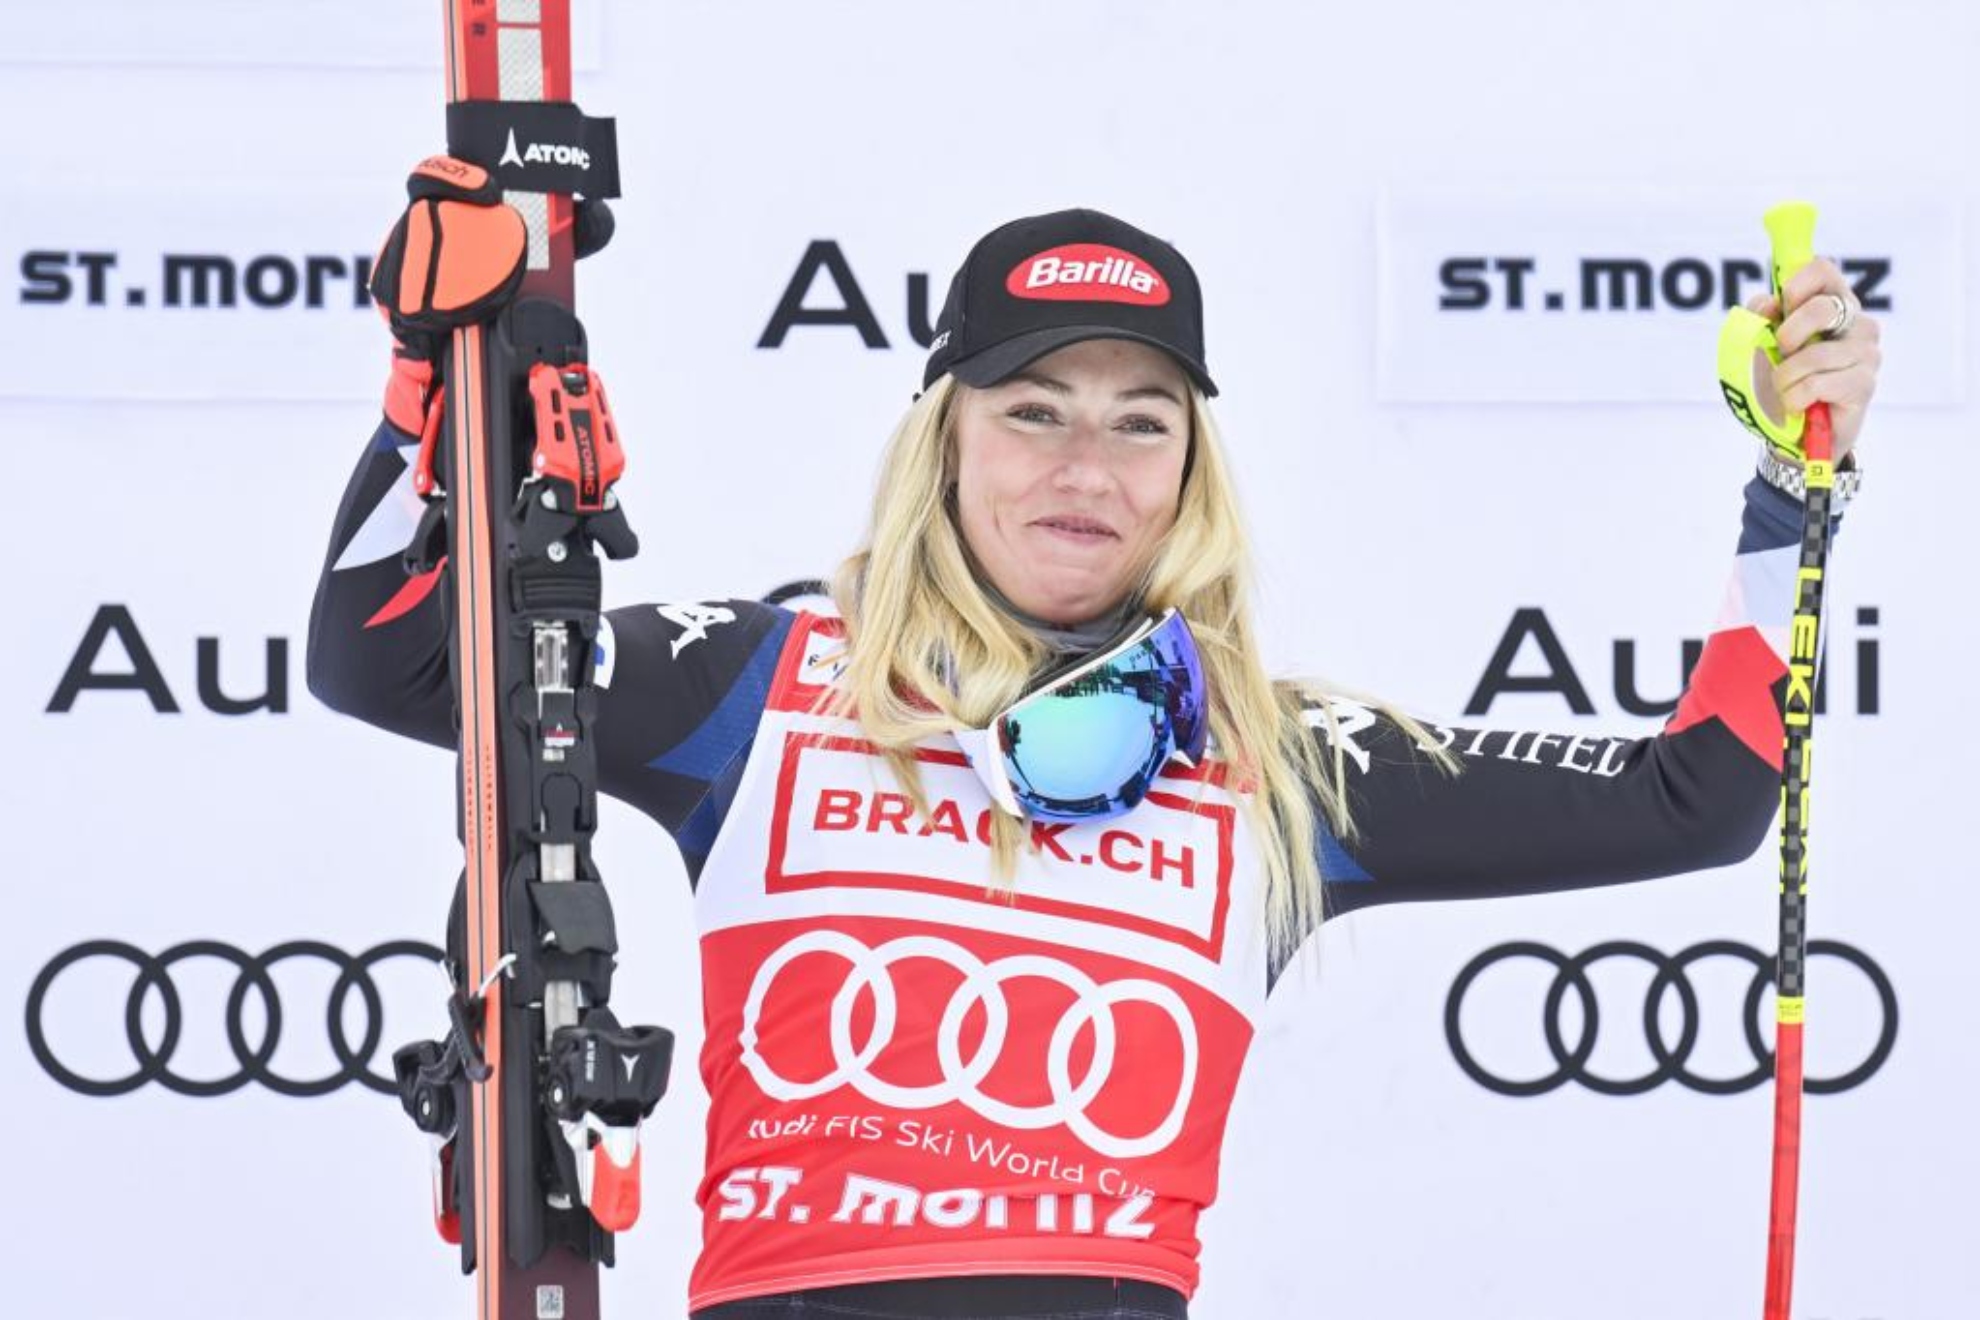 Mikaela Shiffrin, en el podio tras ganar el descenso de Saint Moritz.